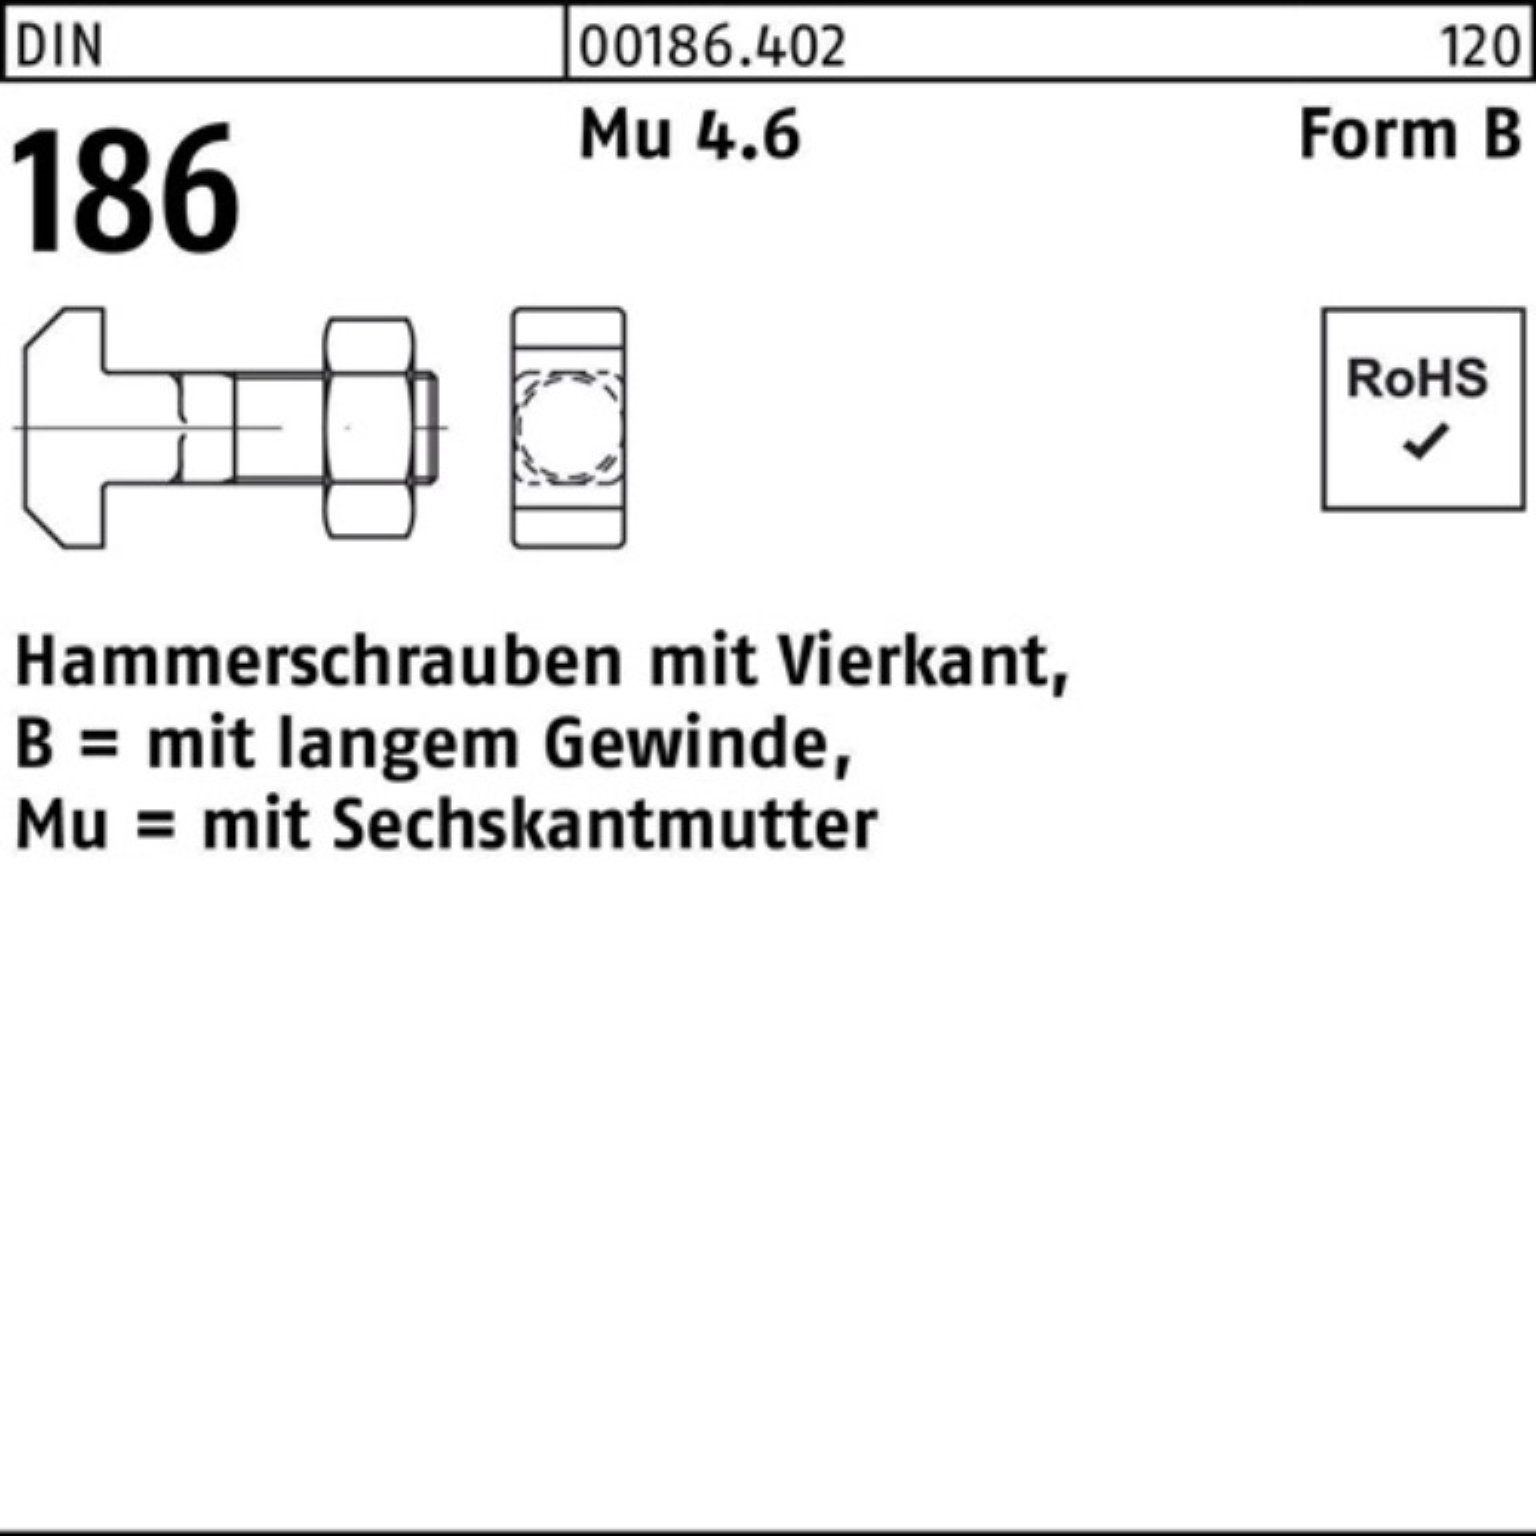 Hammerschraube 186 DIN 100er 50 BM Reyher Pack FormB 6-ktmutter Schraube 16x Vierkant